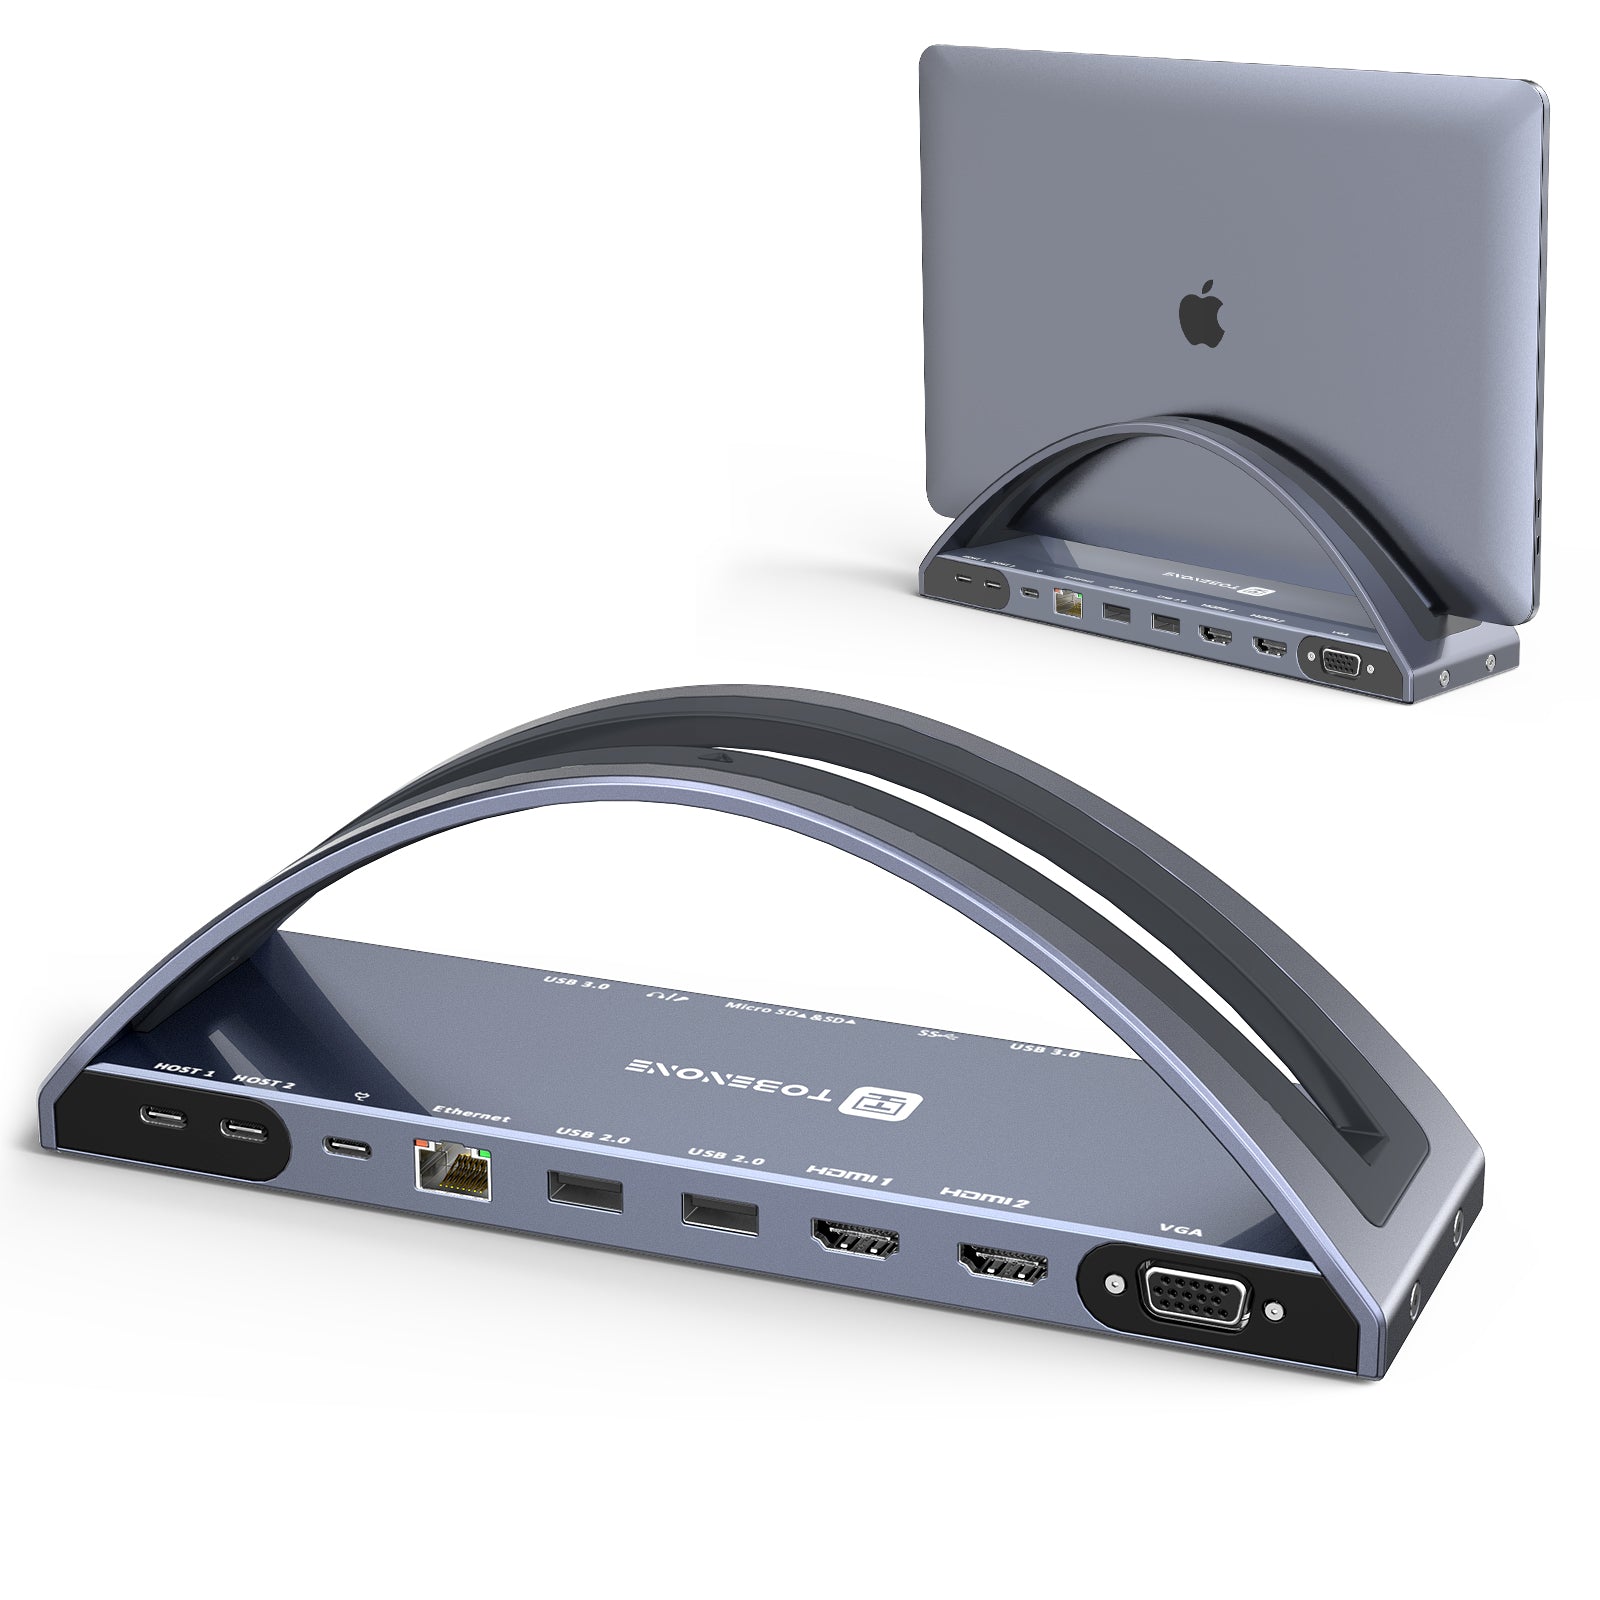 Nebu opfindelse ramme UDS020 Laptop Docking Station Stand Dual Monitor for MacBook Pro/Air –  Tobenone